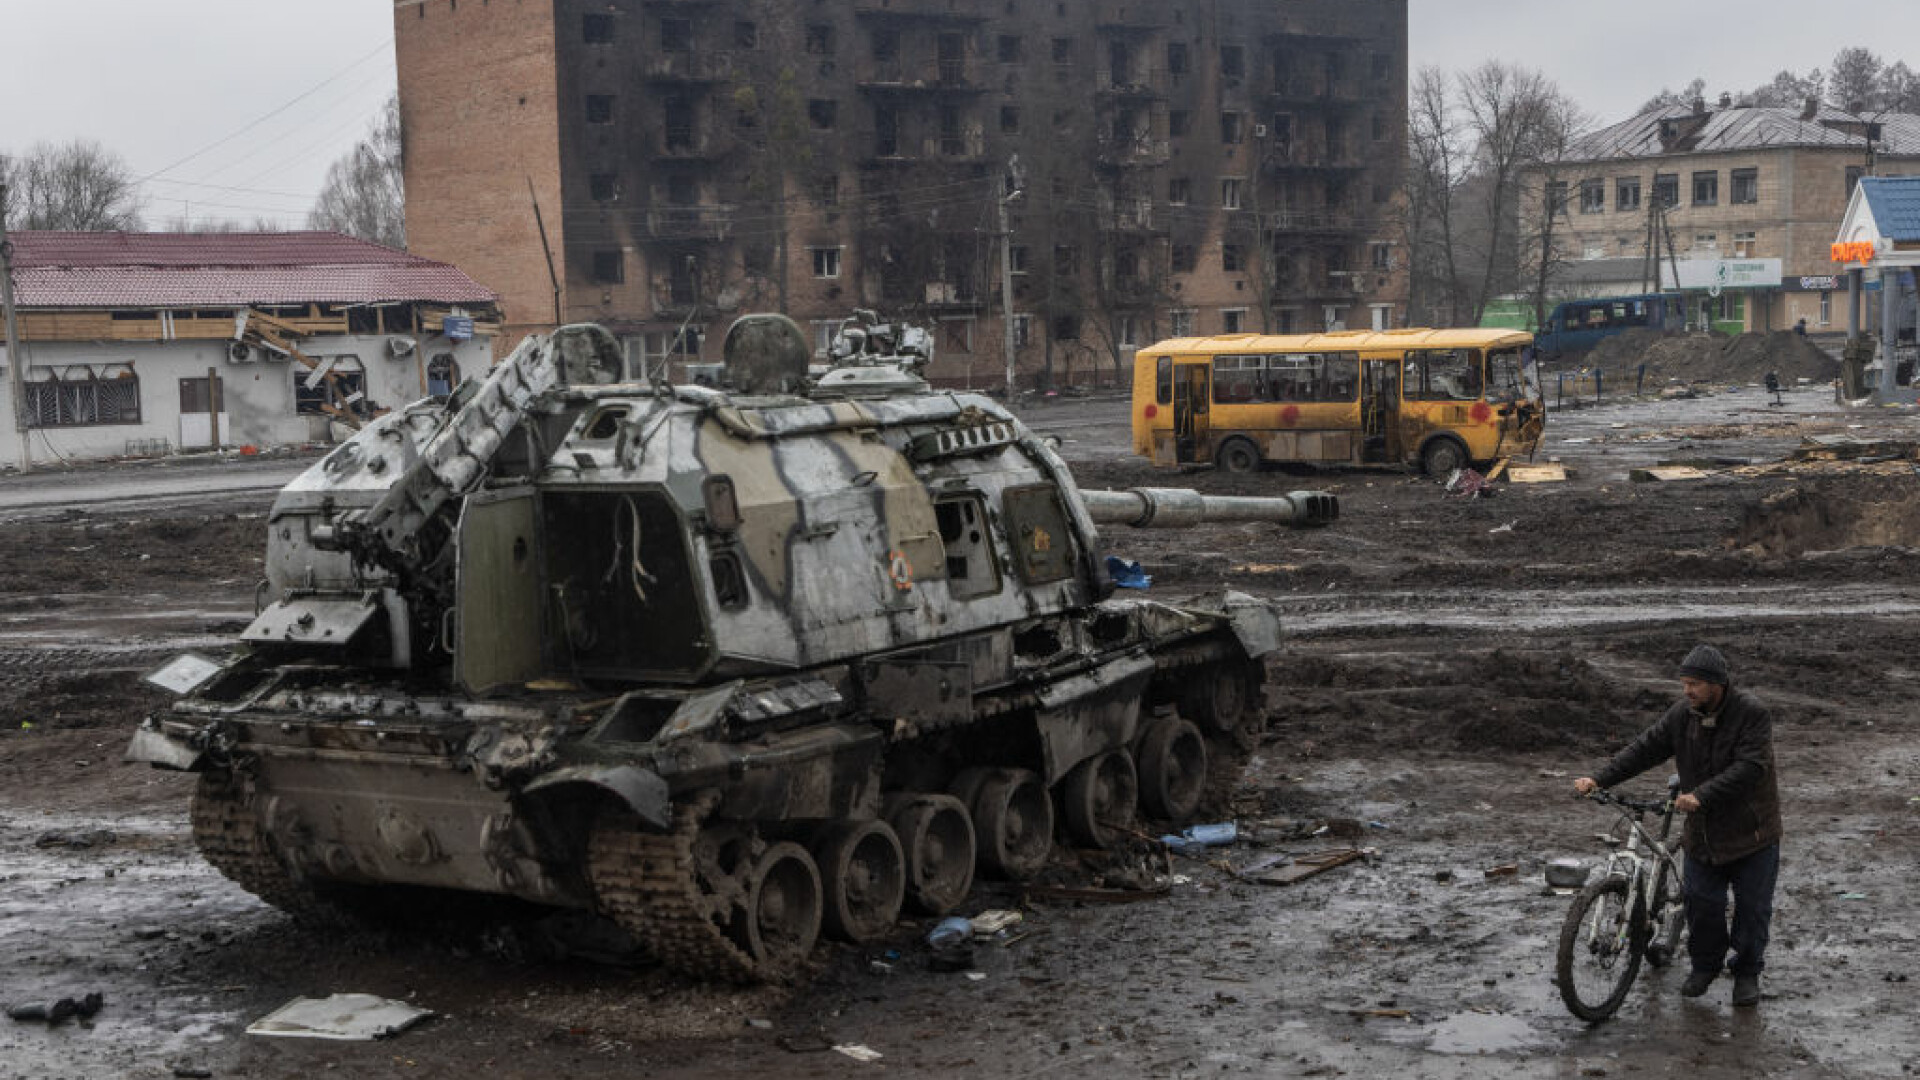 LIVE UPDATE Război în Ucraina, ziua 64. ”Urmează săptămâni extrem de dificile”, spun ucrainenii, Putin face amenințări